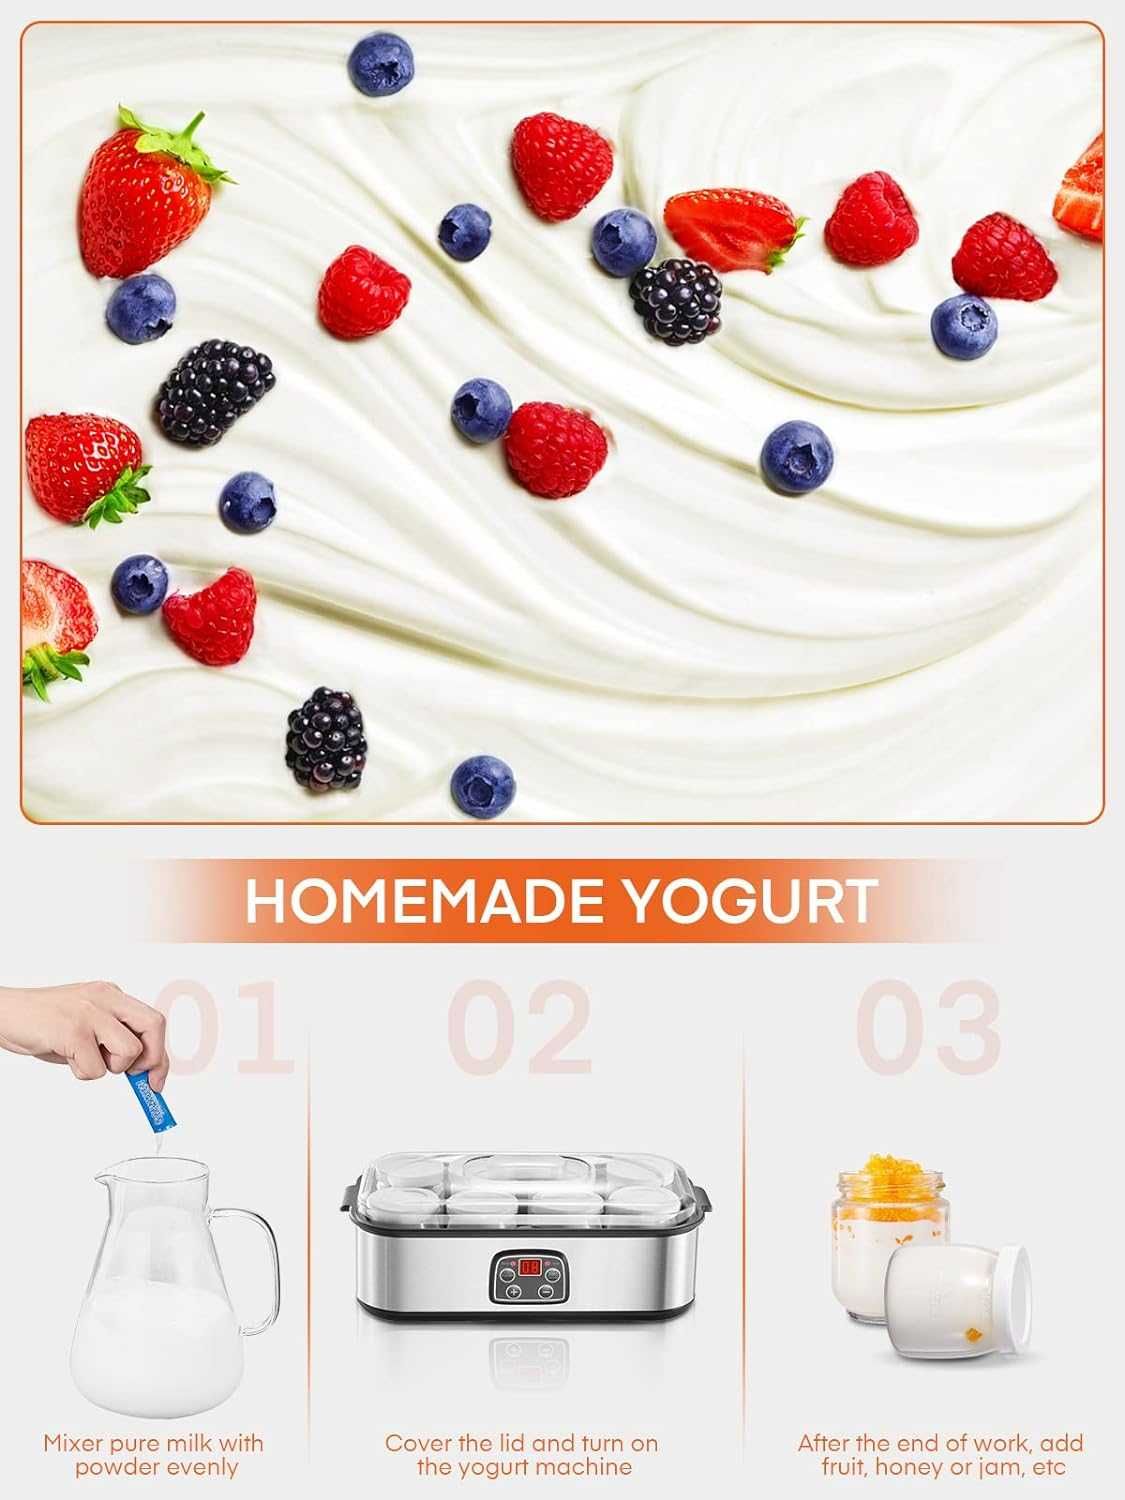 Nowe urządzenie do przyrządzania jogurtu / grecki ‎FOHERE !2008!